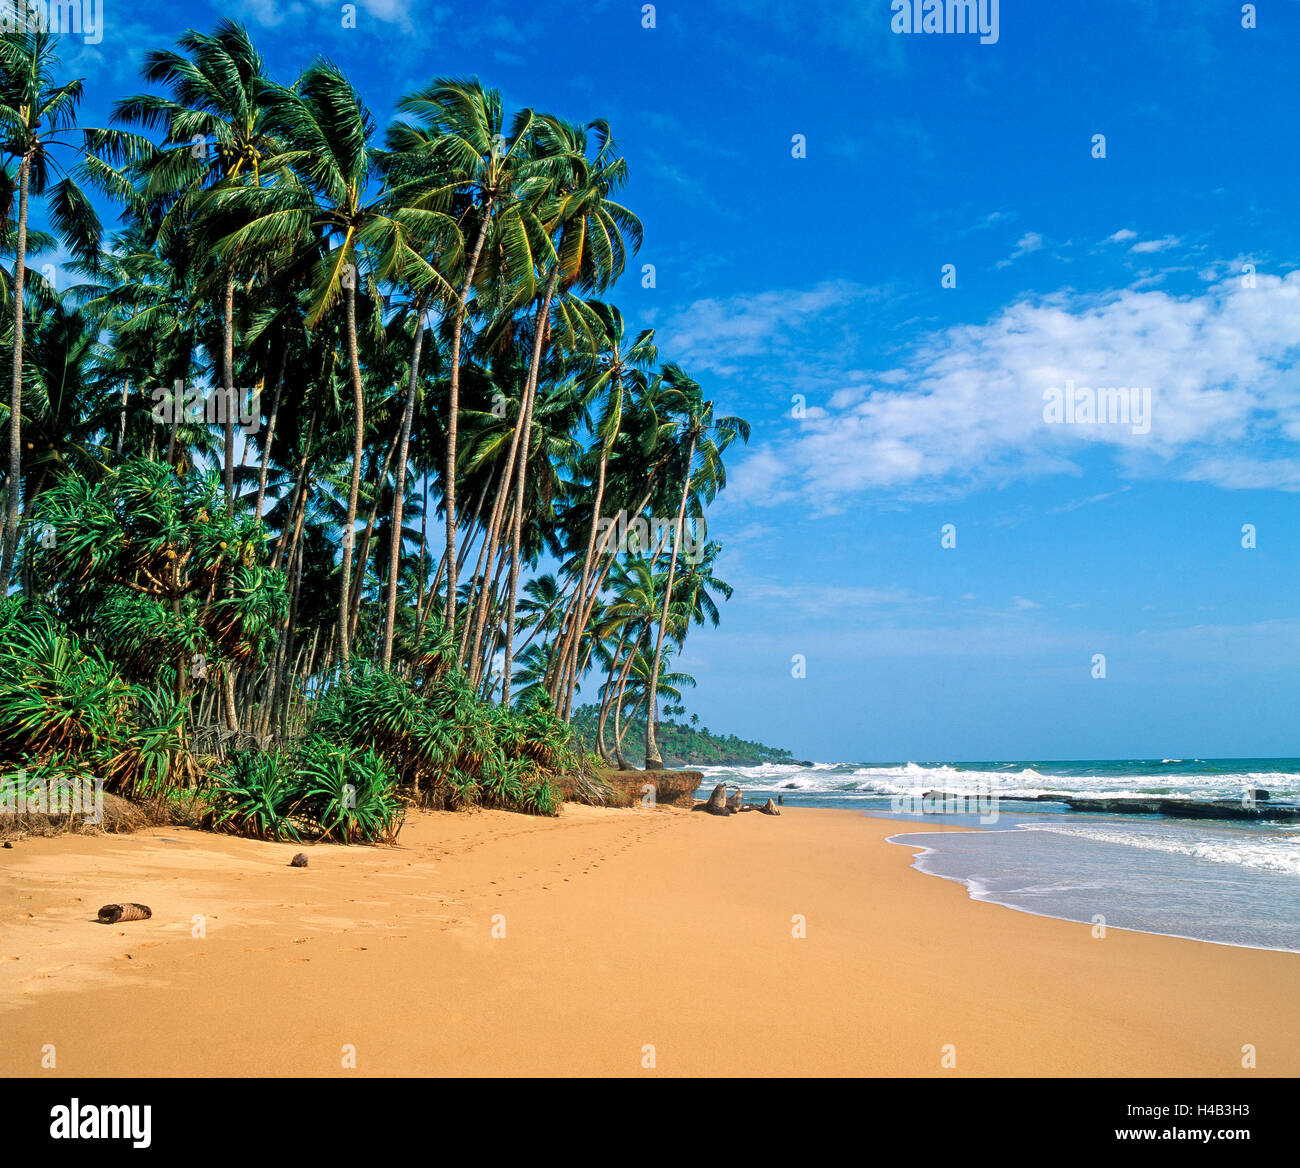 Palm Beach, playa de ensueño, el Océano Índico, aún por descubrir, paraíso de vacaciones Foto de stock